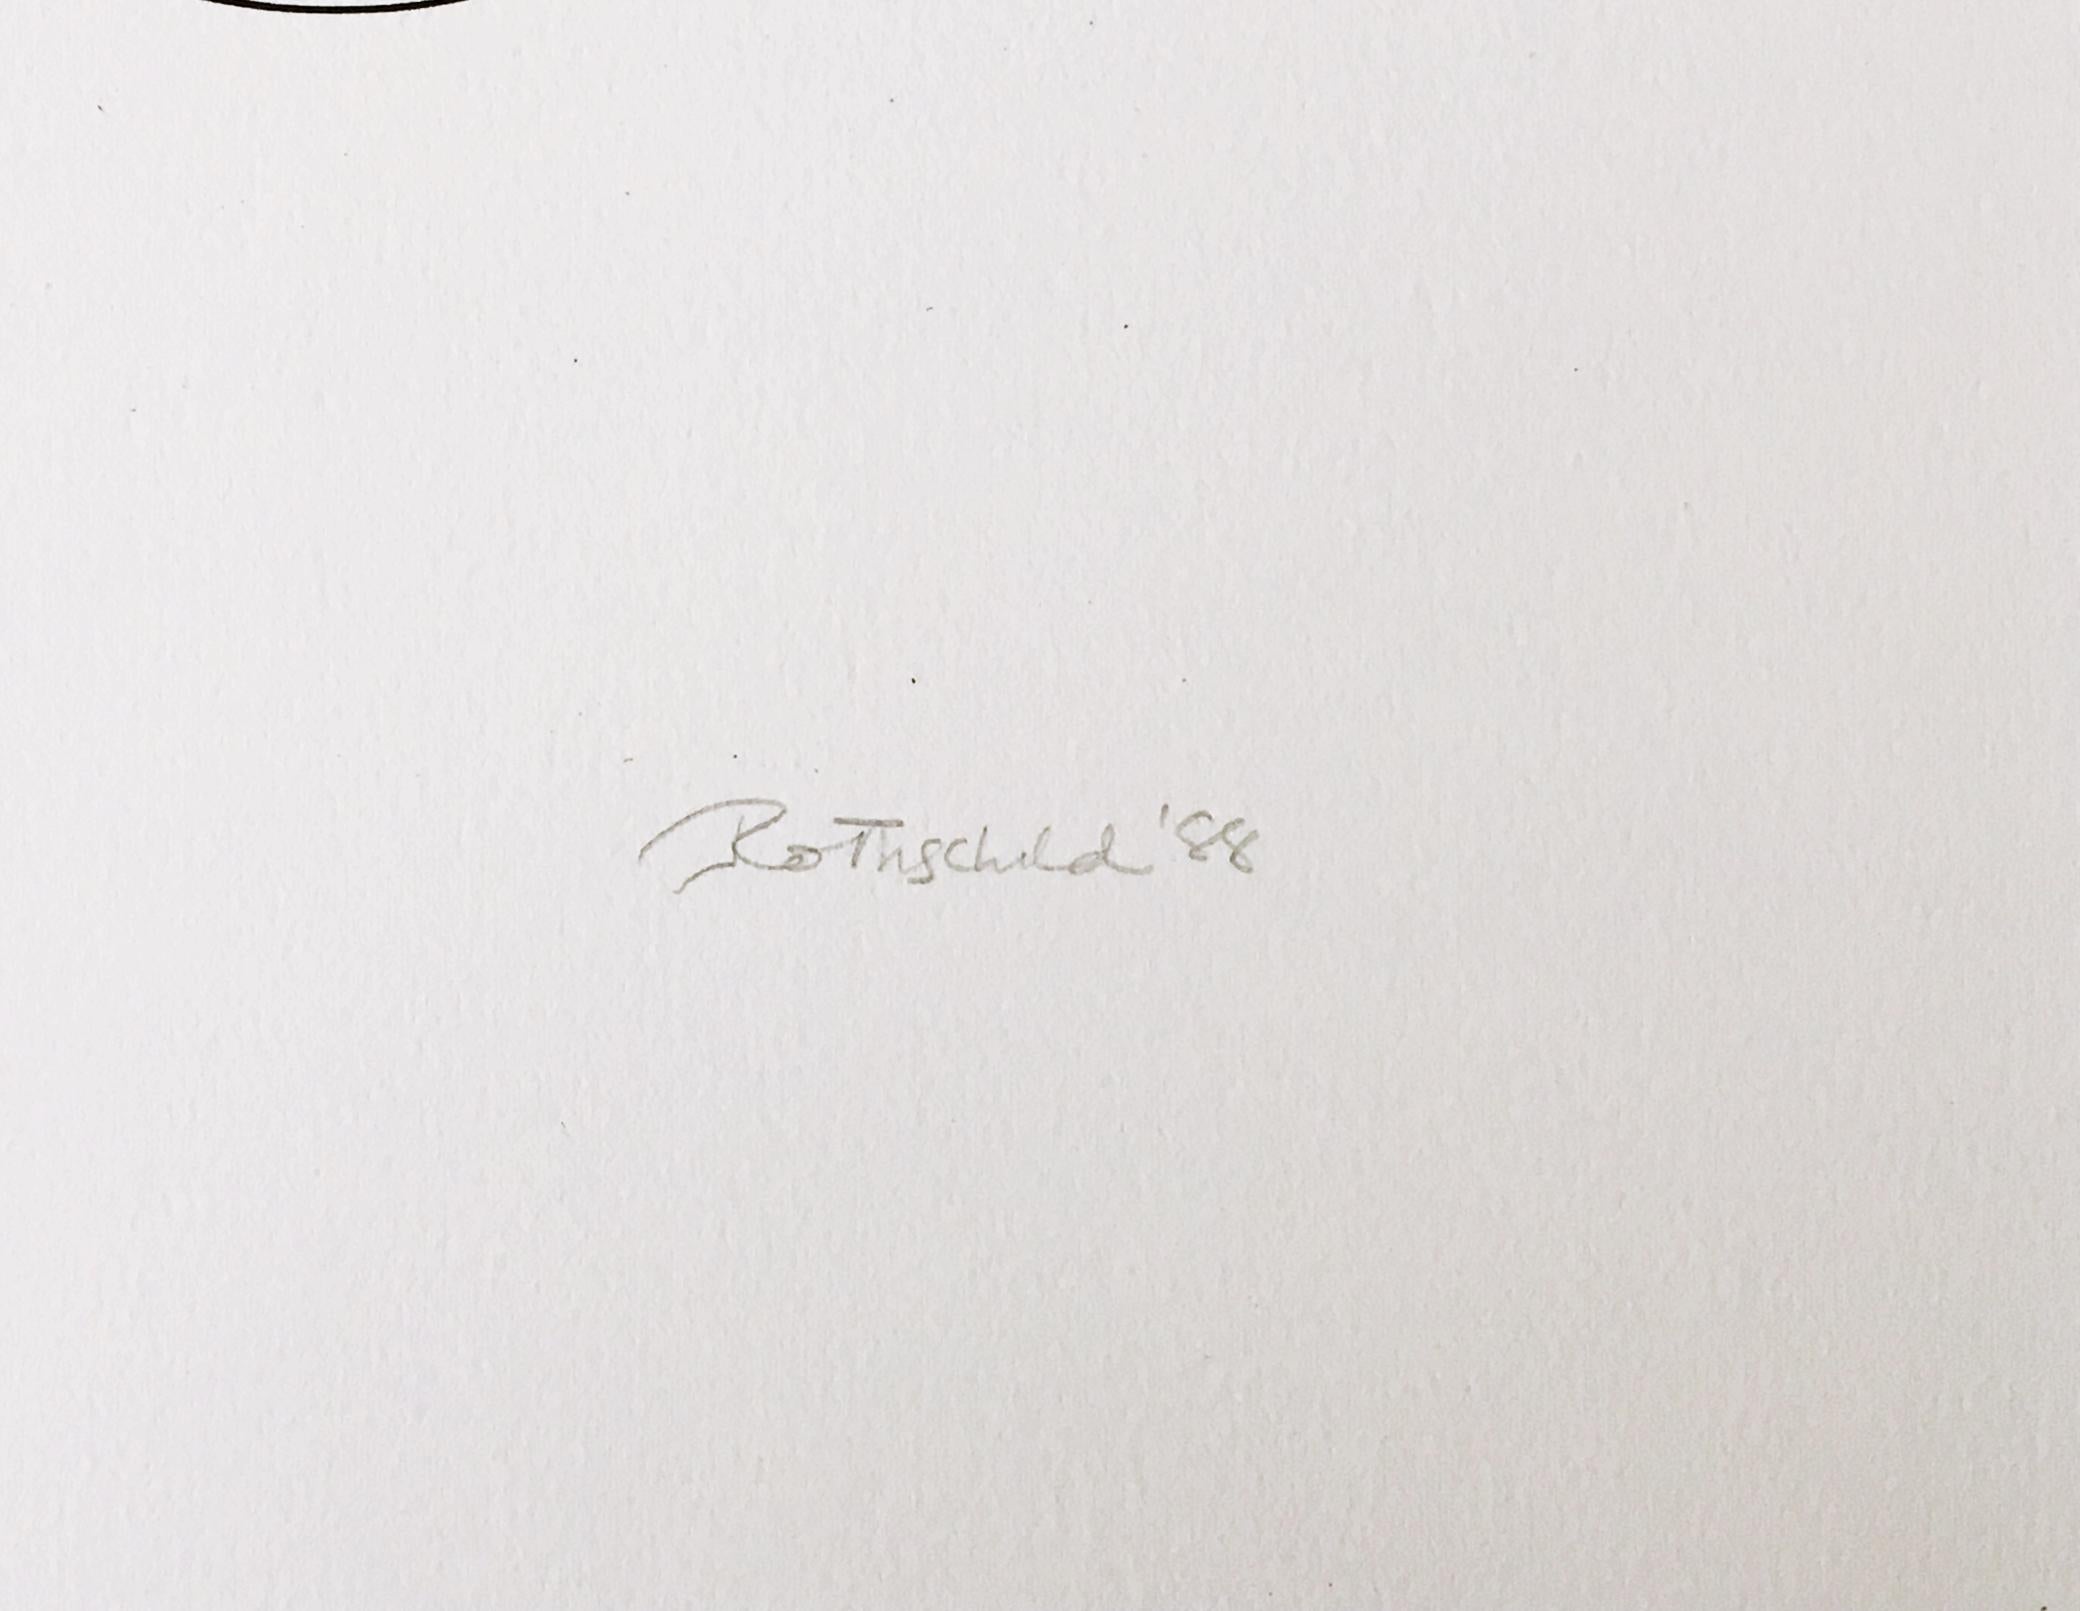 Judith Rothschild
Sans titre, extrait du portfolio de la Long Point Gallery, 1988
Gravure sur bois sur papier
Signée à la main, numérotée 22/30 et datée sur la partie inférieure du recto.
15 × 22 pouces
Non encadré

Éditeur : Long Point Gallery,